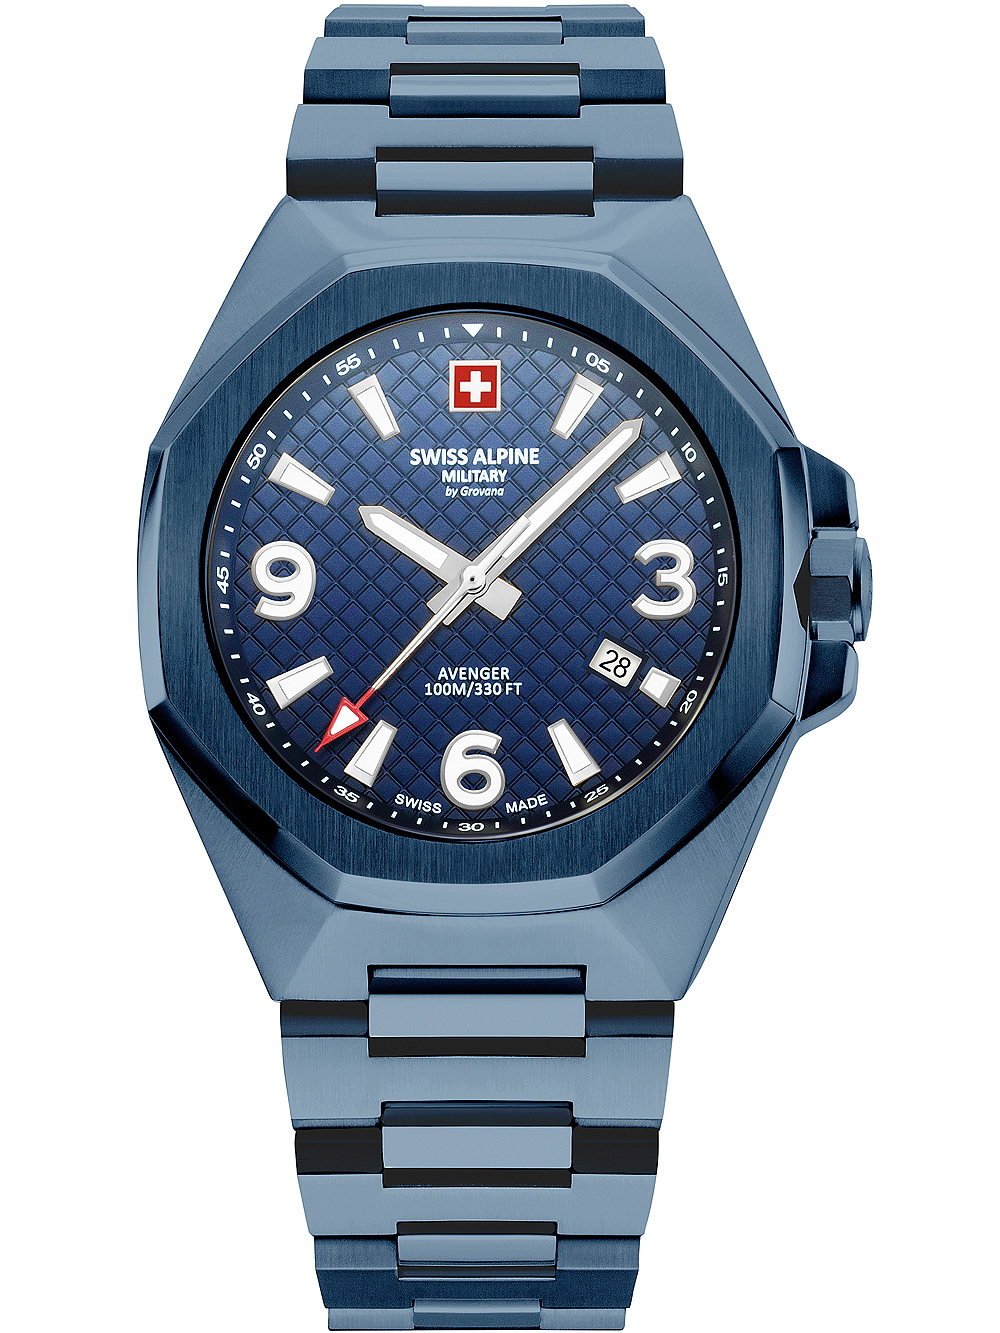 Pánské hodinky Swiss Alpine Military 7005.1195 Avenger